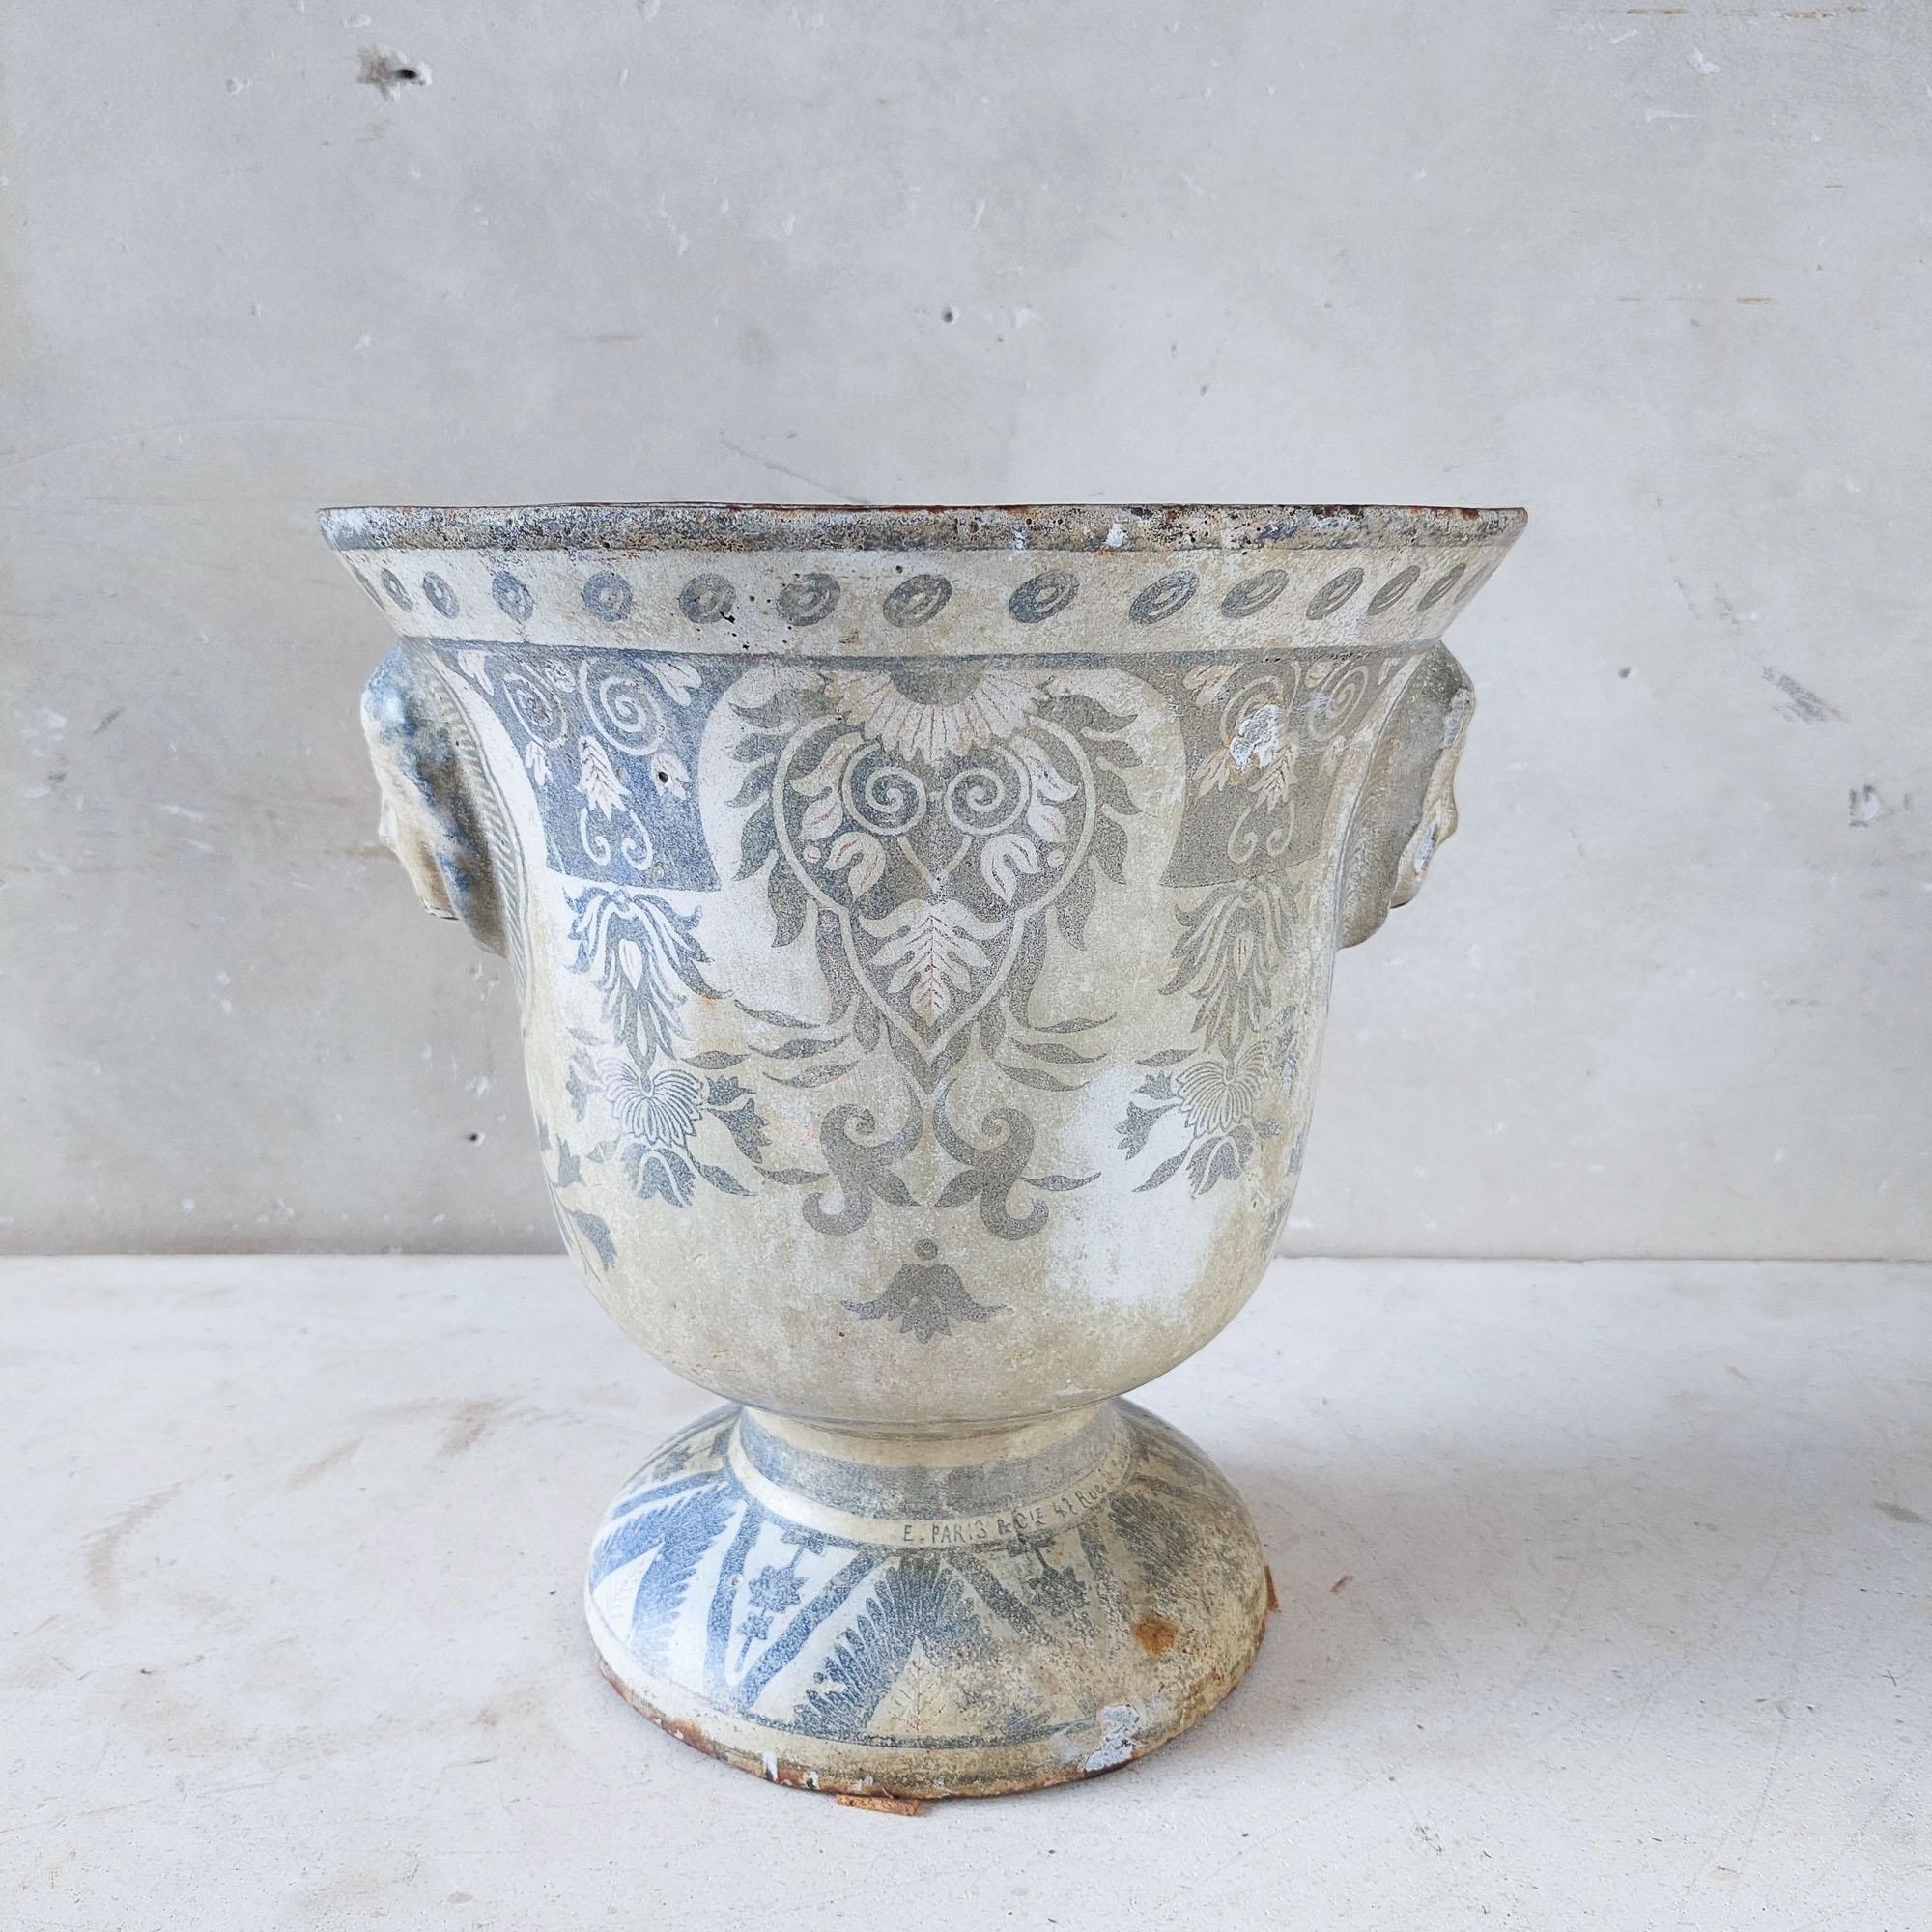 Ajoutez une touche d'histoire à votre décor avec ce vase en fonte émaillée du XIXe siècle de Paris en Cie. Avec ses délicats motifs blancs et bleus, il s'agit d'une pièce d'artisanat intemporelle. D'une hauteur de 32 cm et d'un diamètre de 31 cm, ce